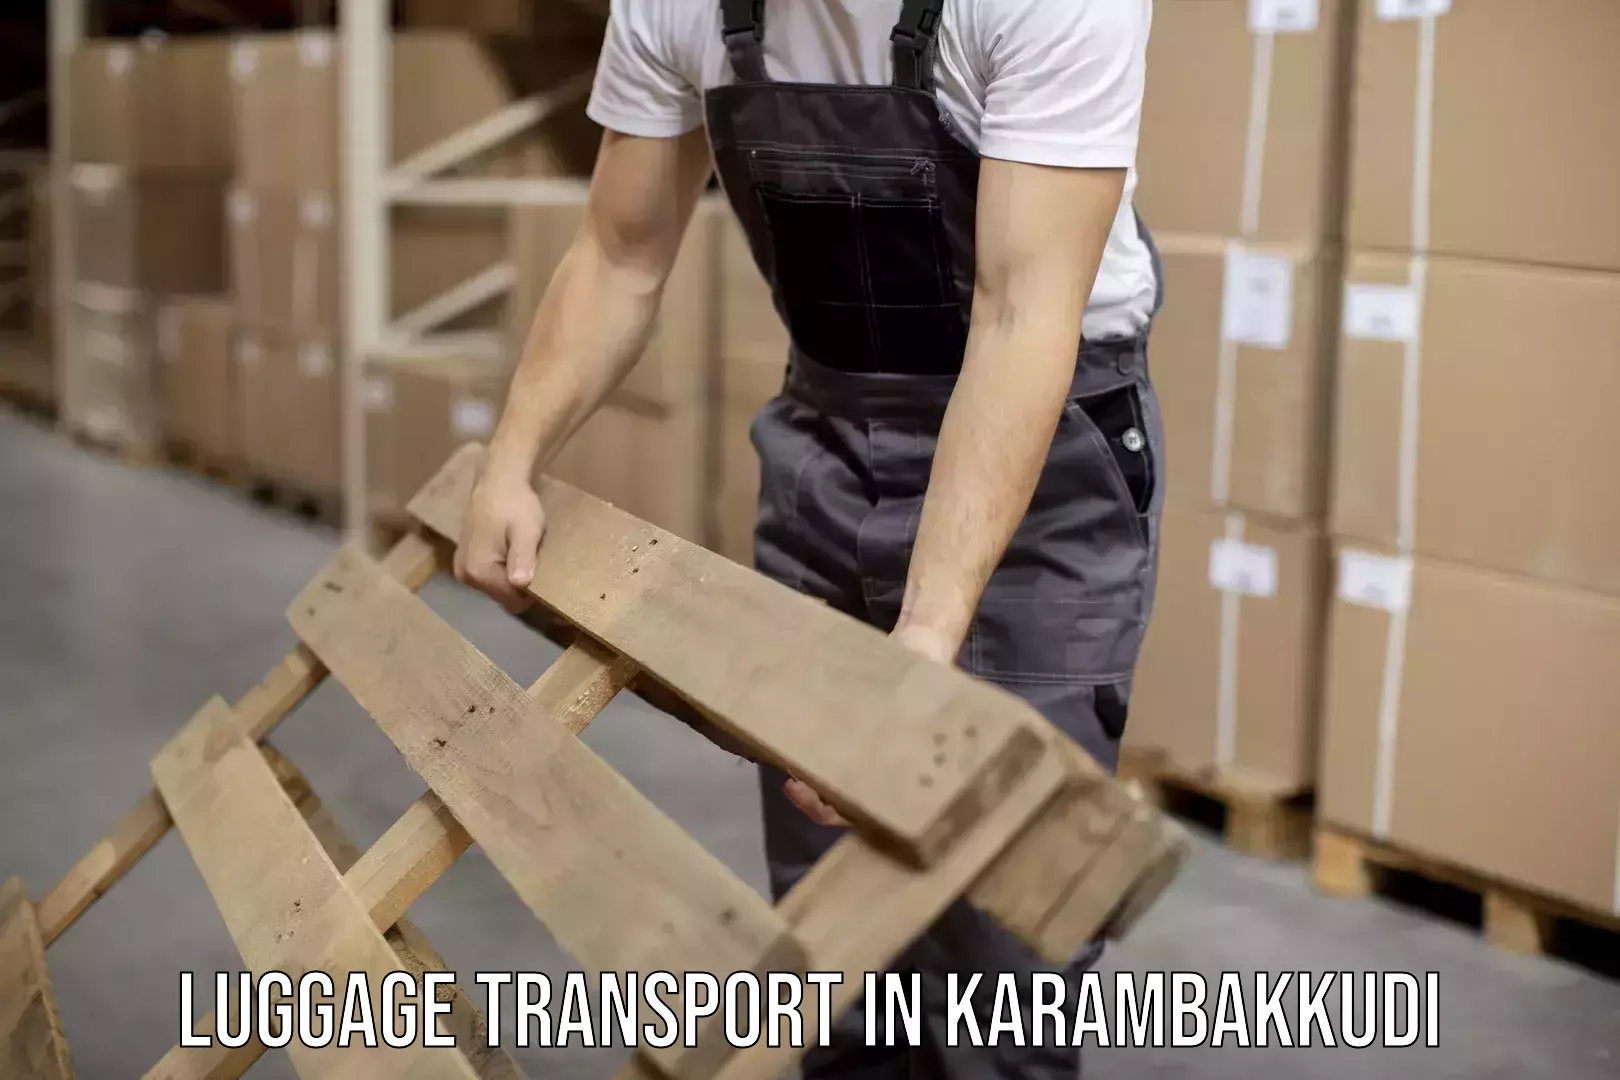 Round trip baggage courier in Karambakkudi